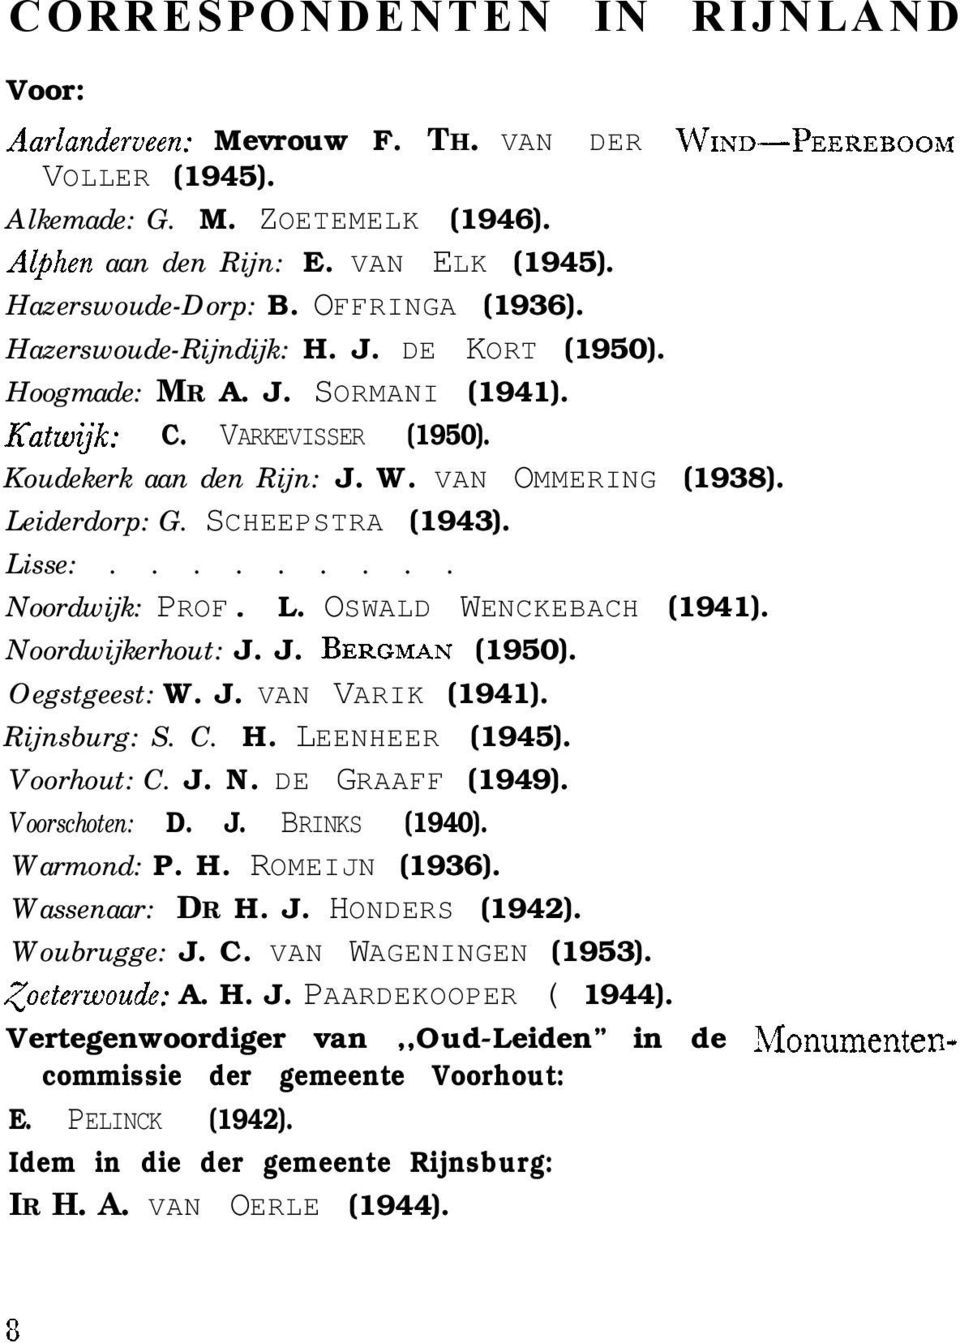 SCHEEPSTRA (1943). Lisse:......... Noordwijk: PROF. L. OSWALD WENCKEBACH (1941). Noordwijkerhout: J. J. BERGMAN (1950). Oegstgeest: W. J. VAN VARIK (1941). Rijnsburg: S. C. H. LEENHEER (1945).